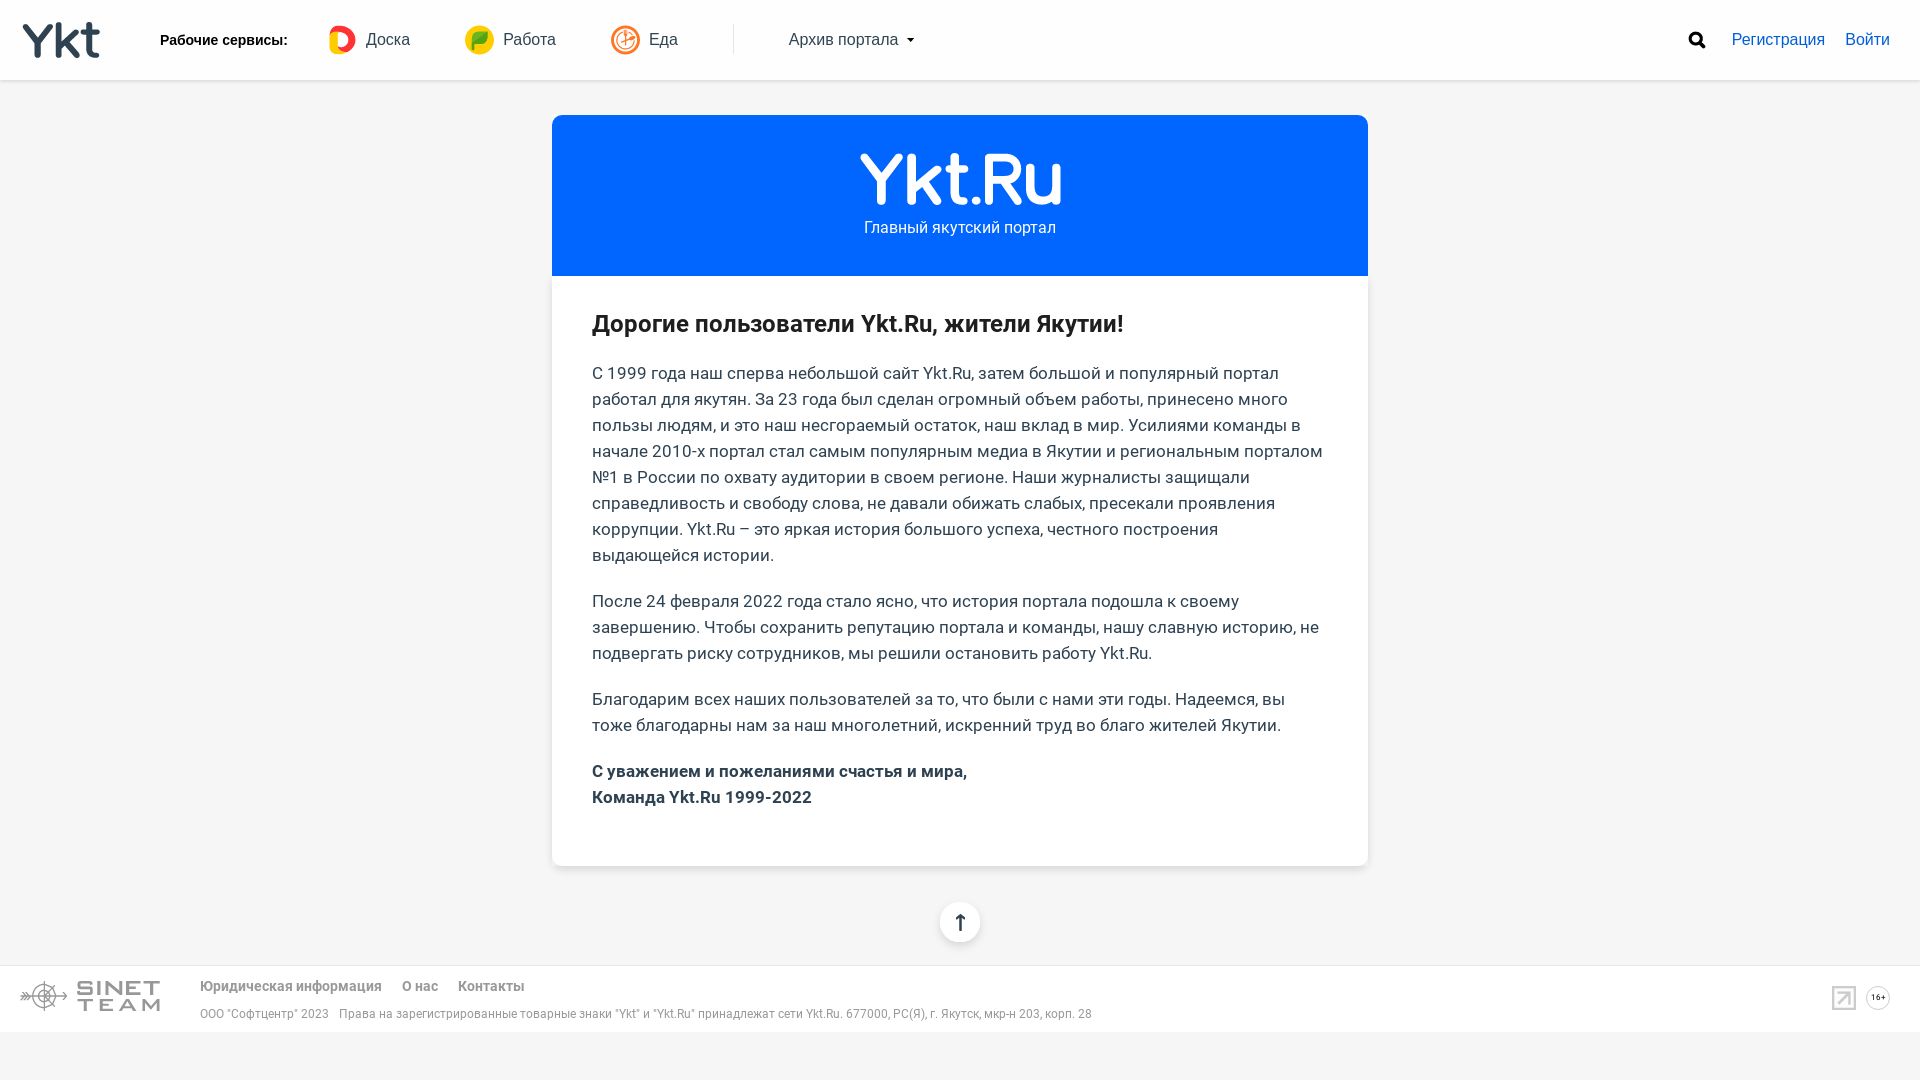 Stato del sito web ykt.ru è   ONLINE